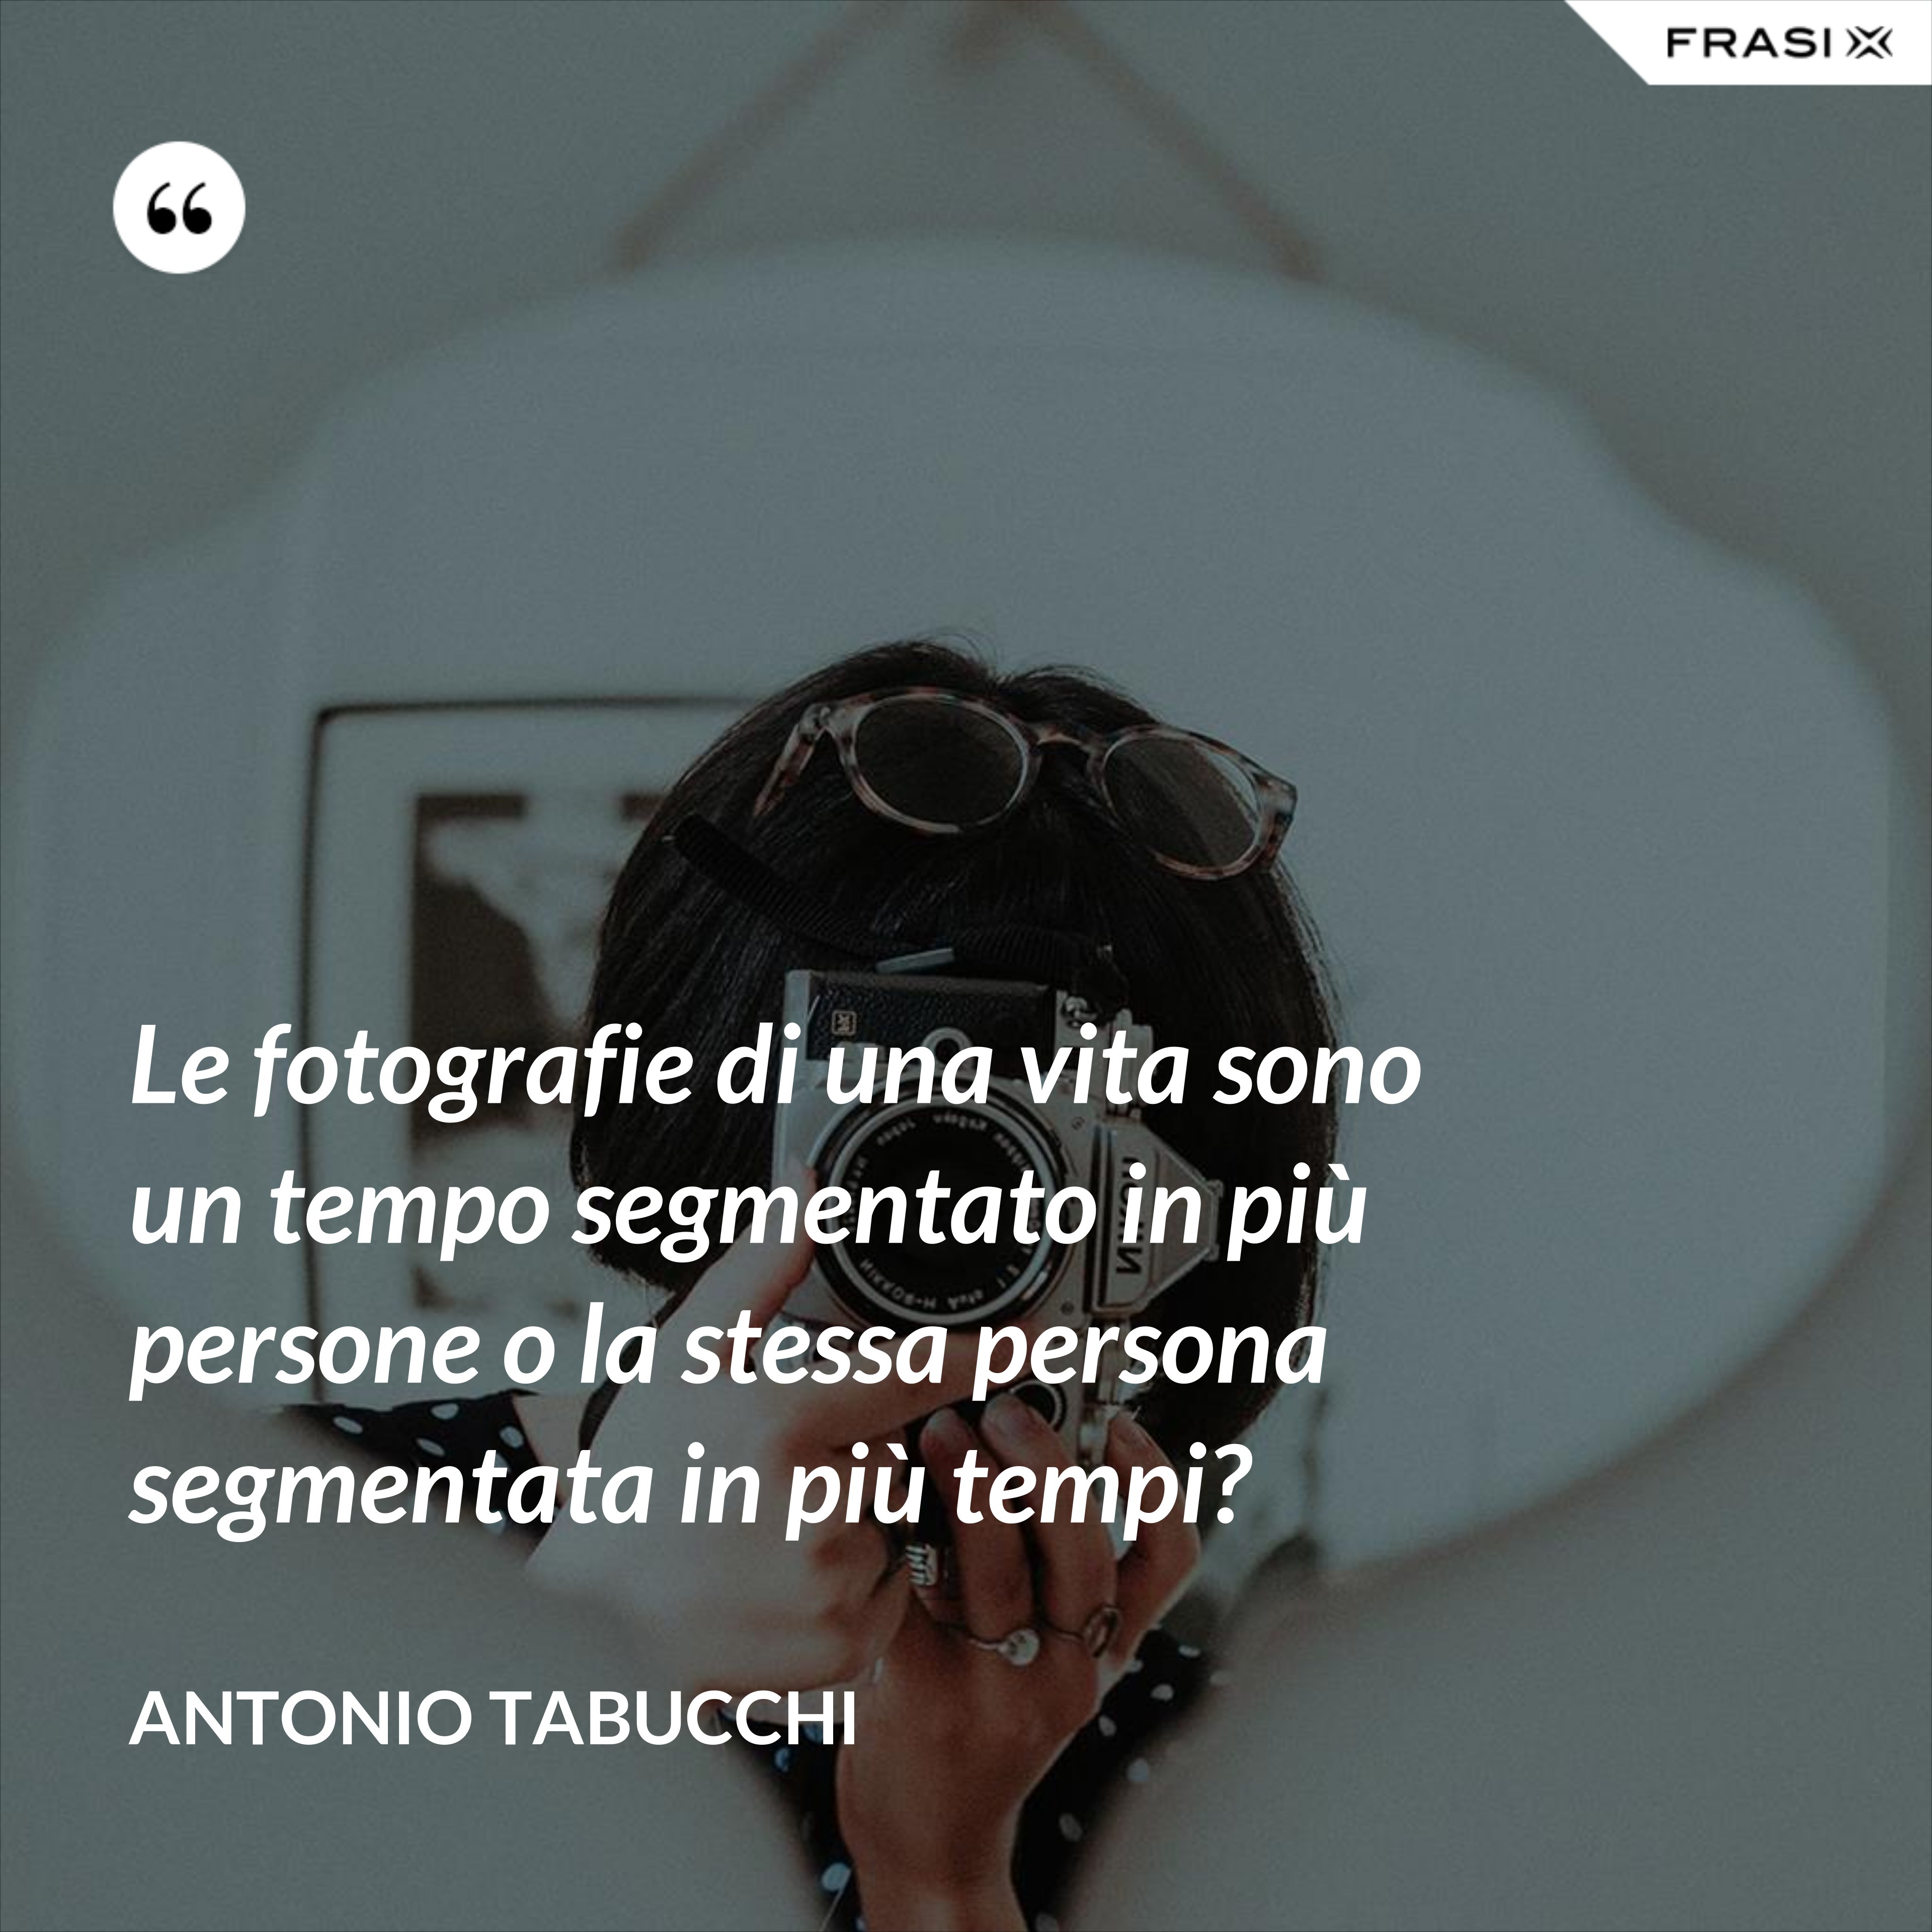 Le fotografie di una vita sono un tempo segmentato in più persone o la stessa persona segmentata in più tempi? - Antonio Tabucchi